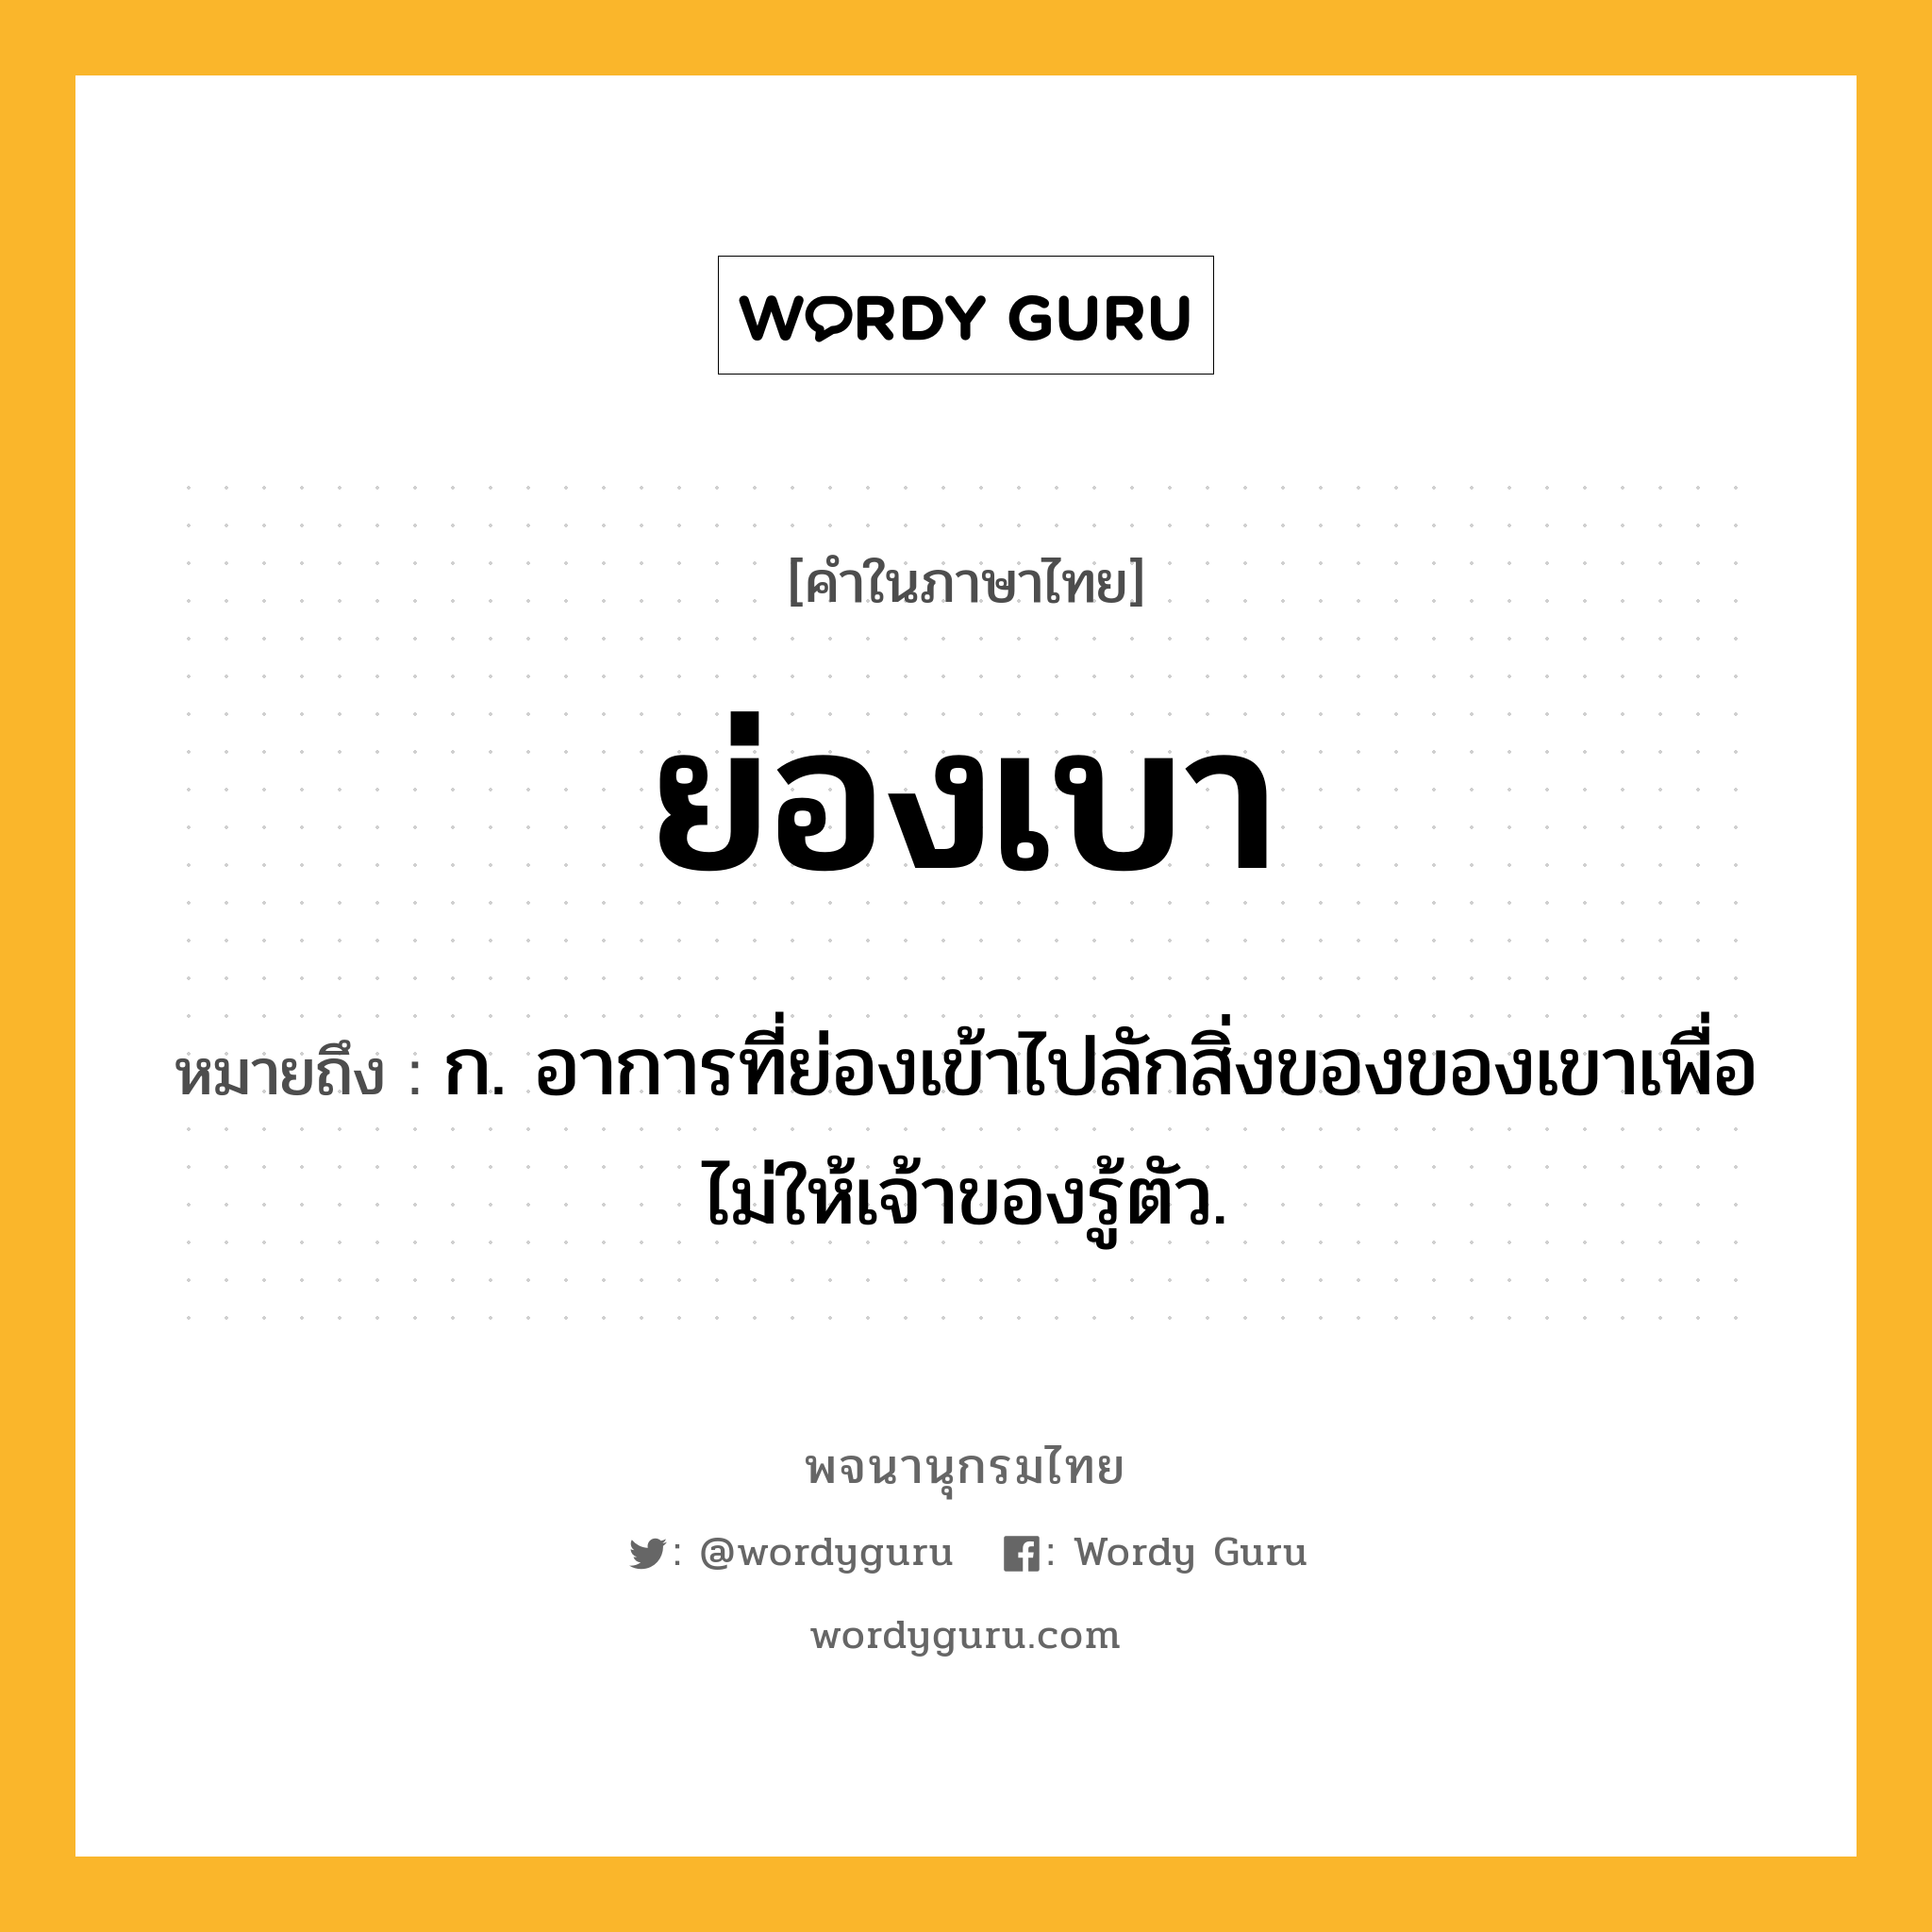 ย่องเบา ความหมาย หมายถึงอะไร?, คำในภาษาไทย ย่องเบา หมายถึง ก. อาการที่ย่องเข้าไปลักสิ่งของของเขาเพื่อไม่ให้เจ้าของรู้ตัว.